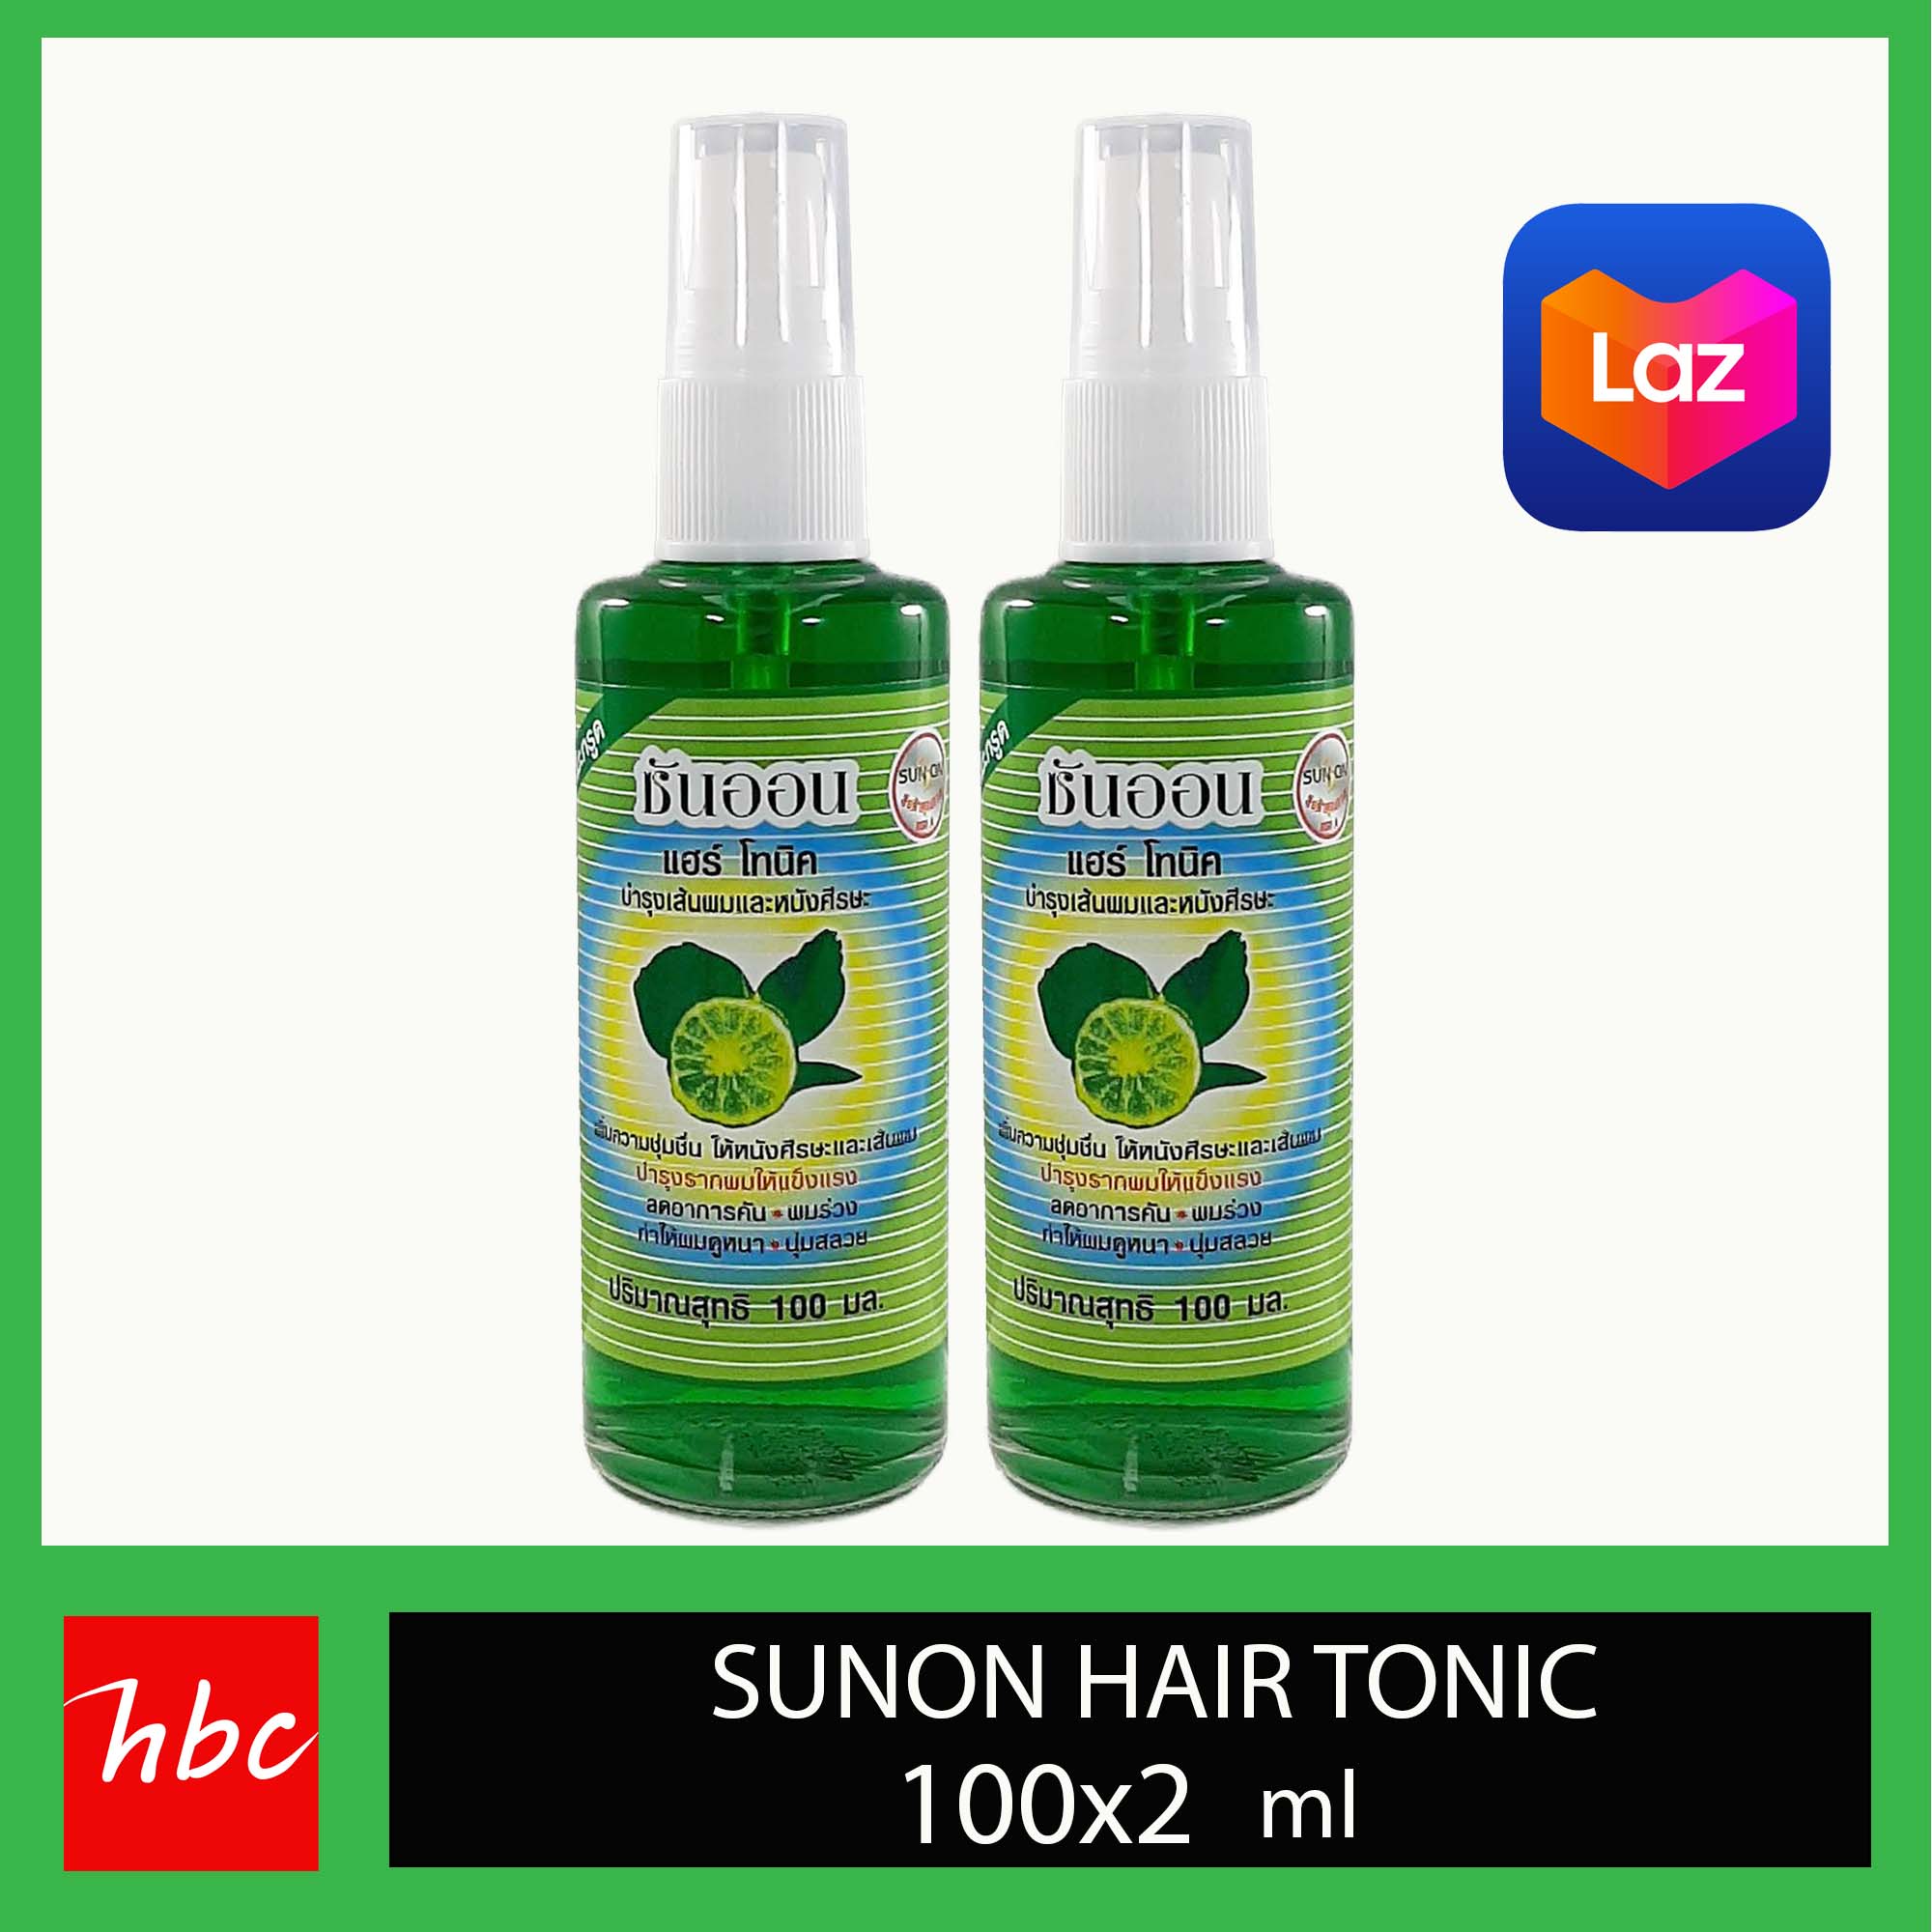 แฮร์โทนิค ซันออน hair tonic sunon  มะกูด ชนิดหัวฉีด แฮร์โทนิก จำนวน 2 ขวด ขวดสีเขียว 100 มล. (133)